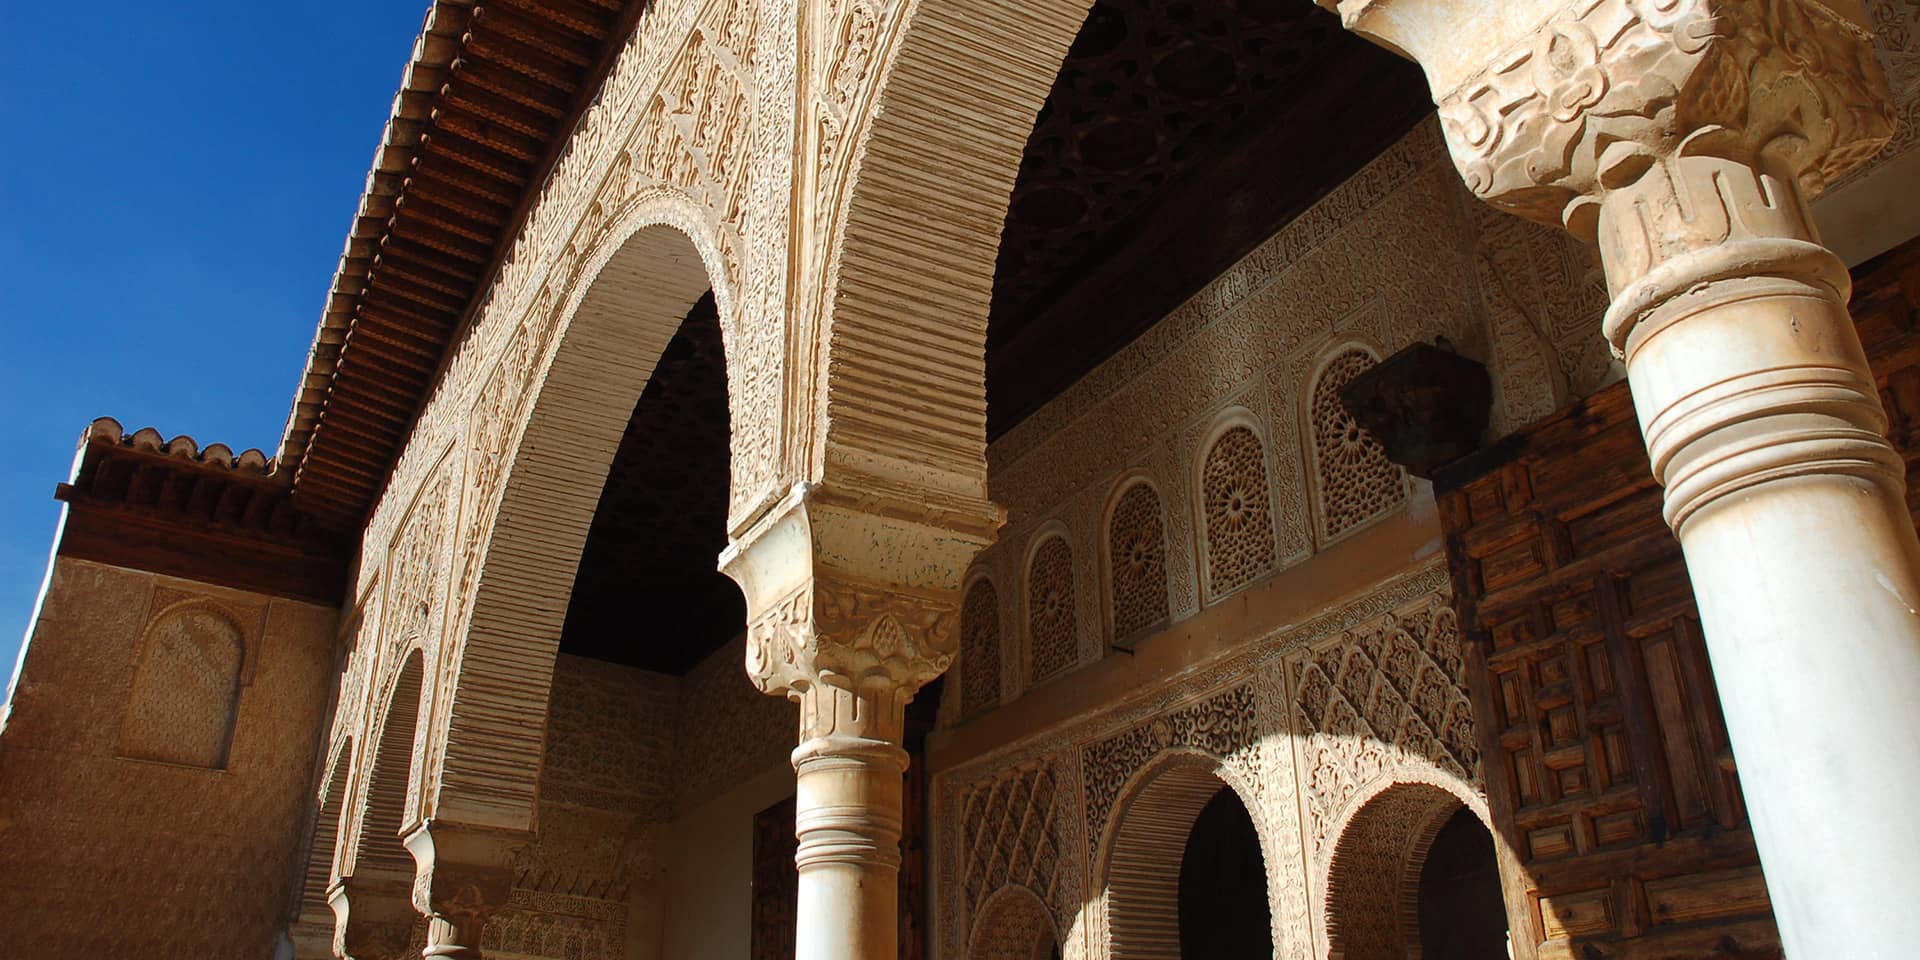 Billede af bygning med dekoration i Granada, Spanien